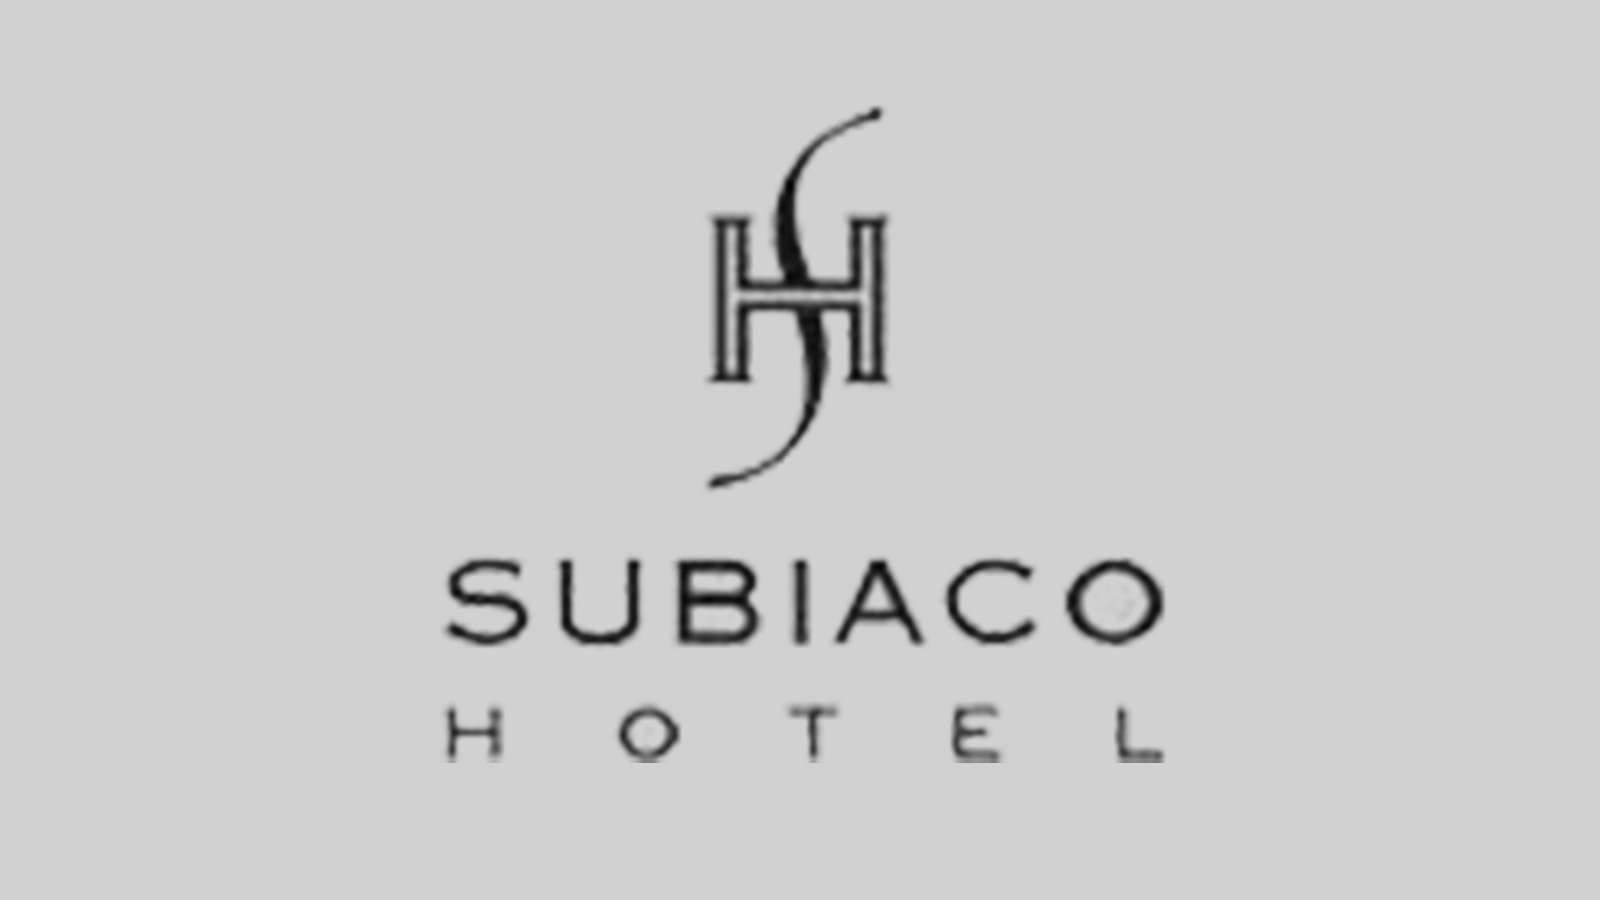 Subiaco-Hotel-Grey-BG-1.jpg